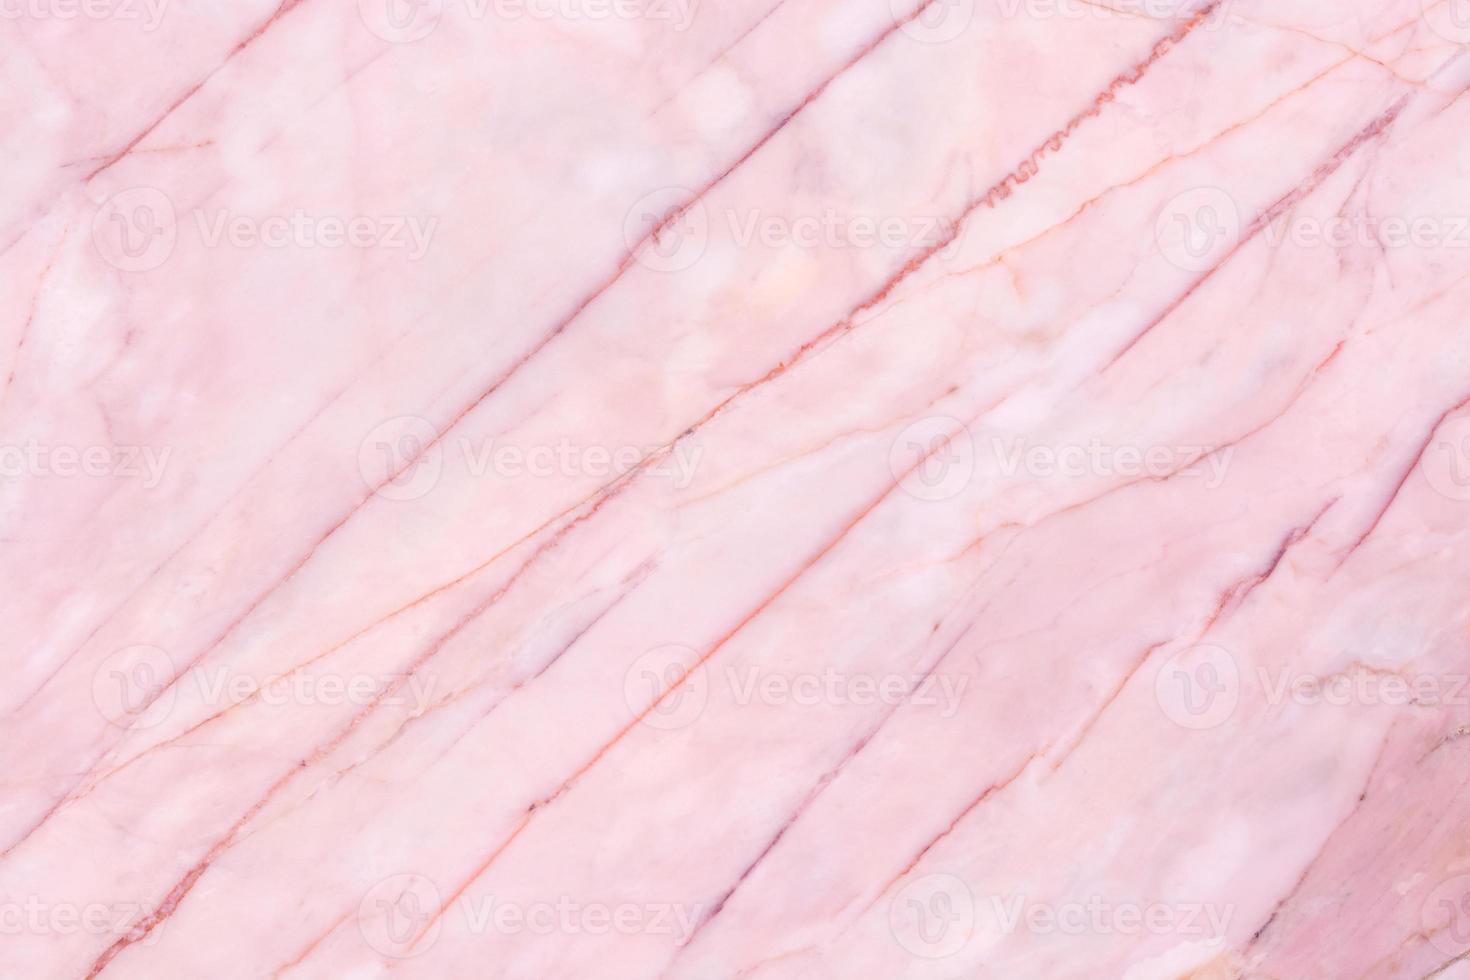 fondo de textura de mármol rosa. superficie en blanco para el diseño foto